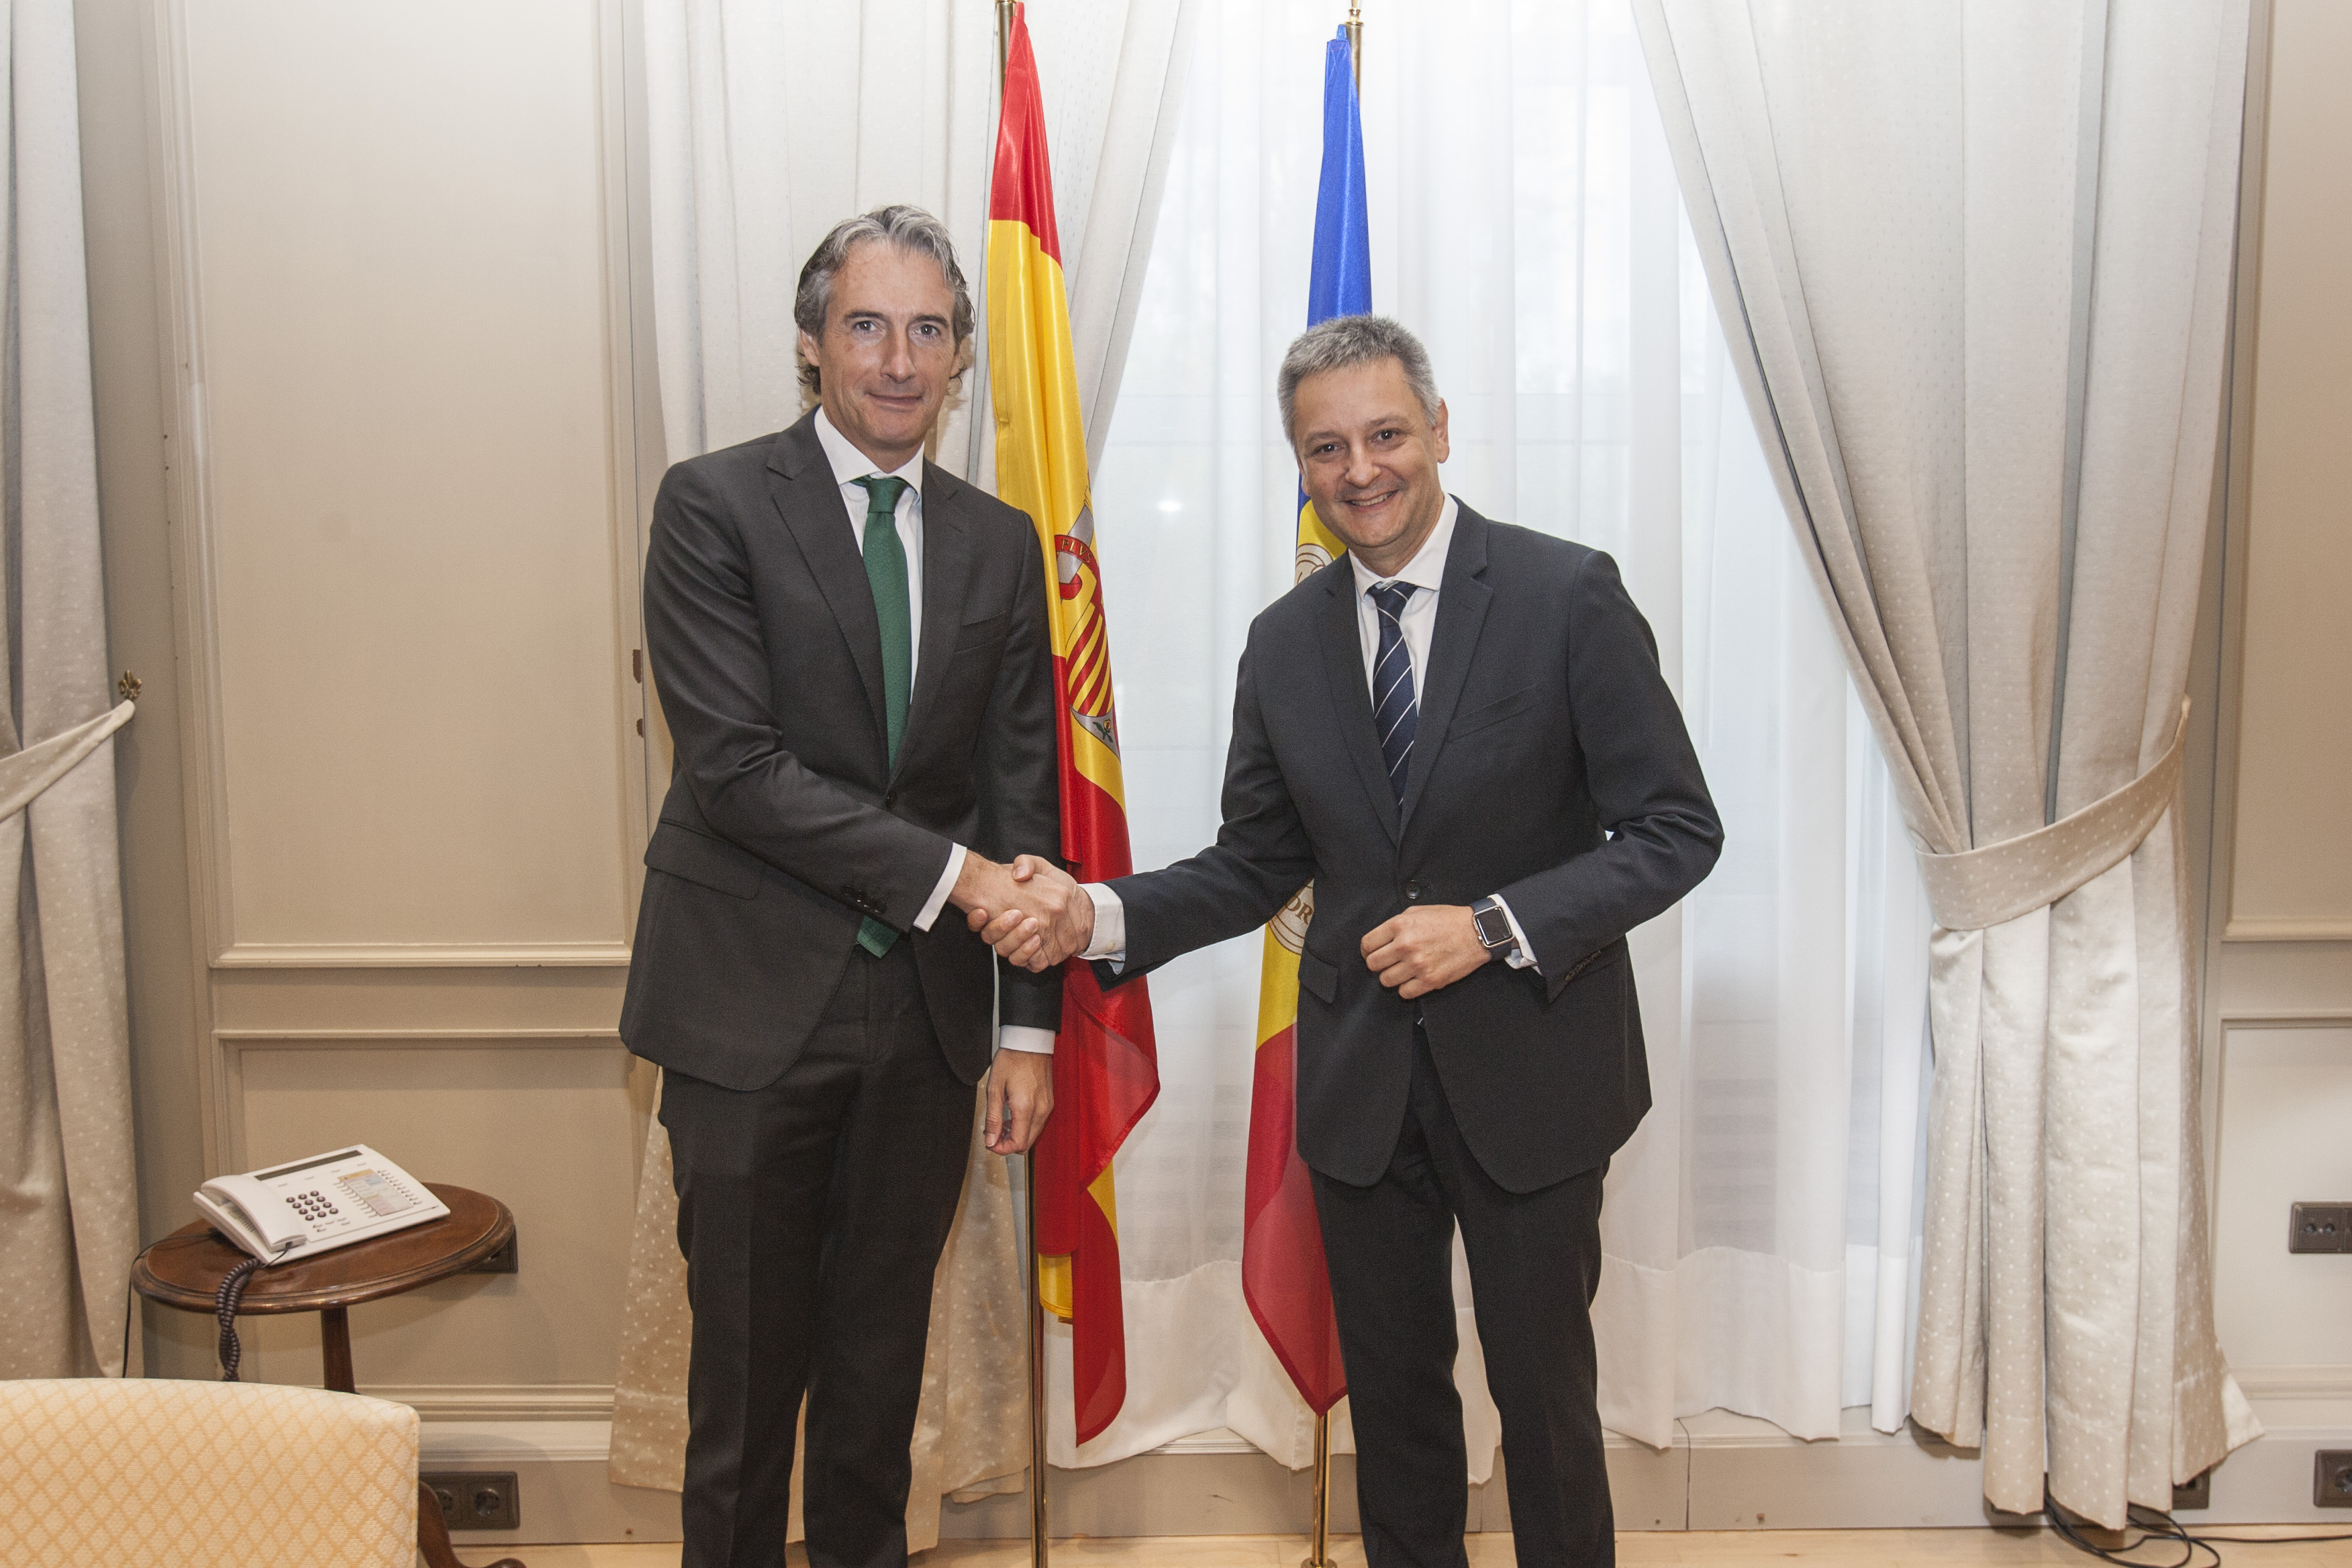 Nova reunió entre Andorra i Espanya per analitzar la situació de 